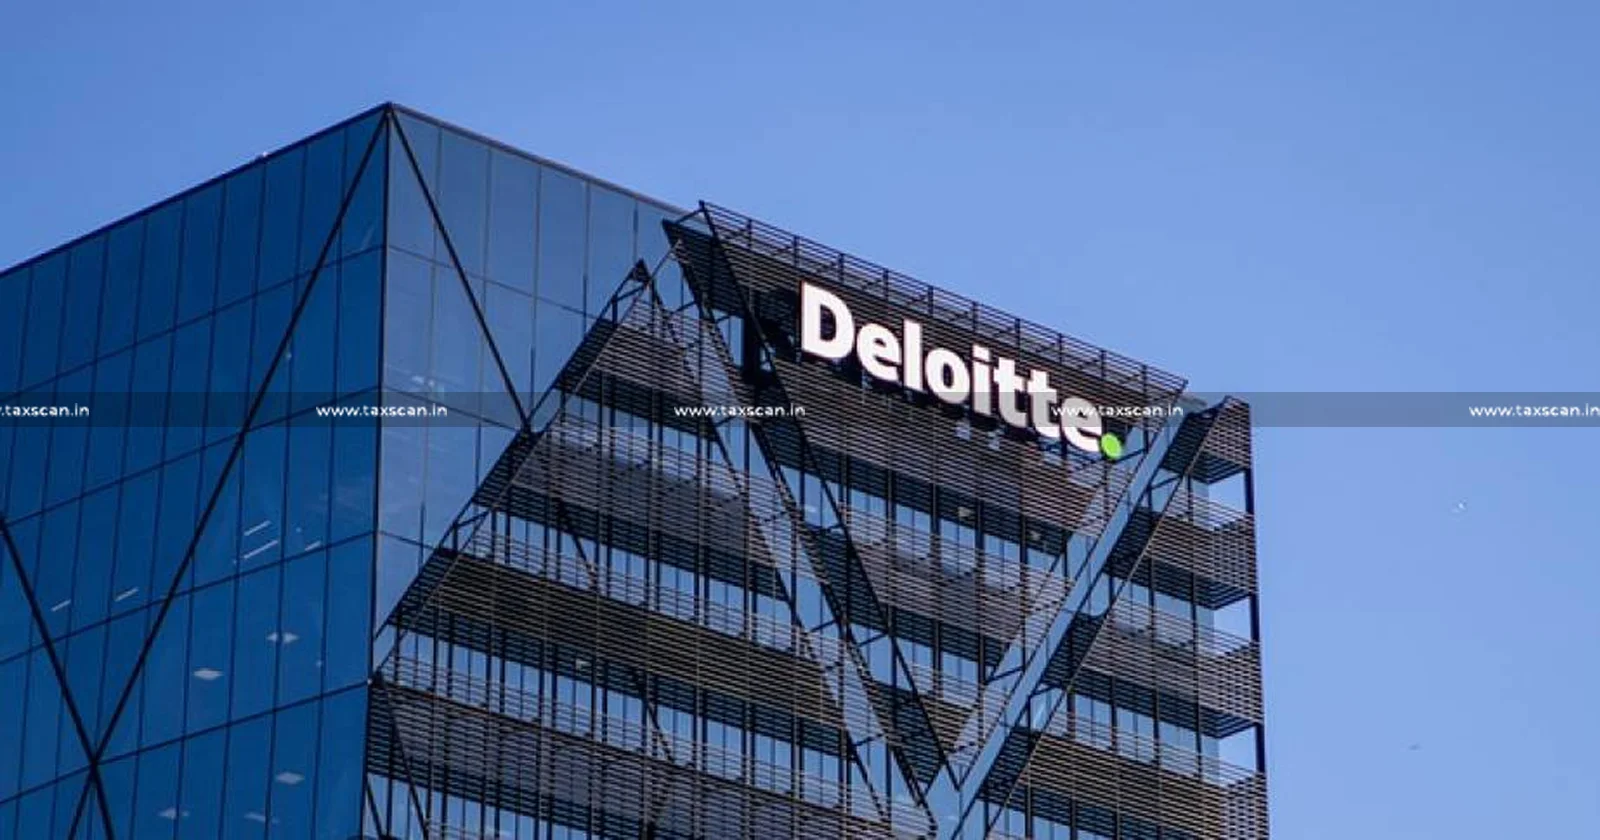 CA Vacancy in Deloitte - Vacancy in Deloitte - CA Vacancy - CA Opportunity in Deloitte - TAXSCAN